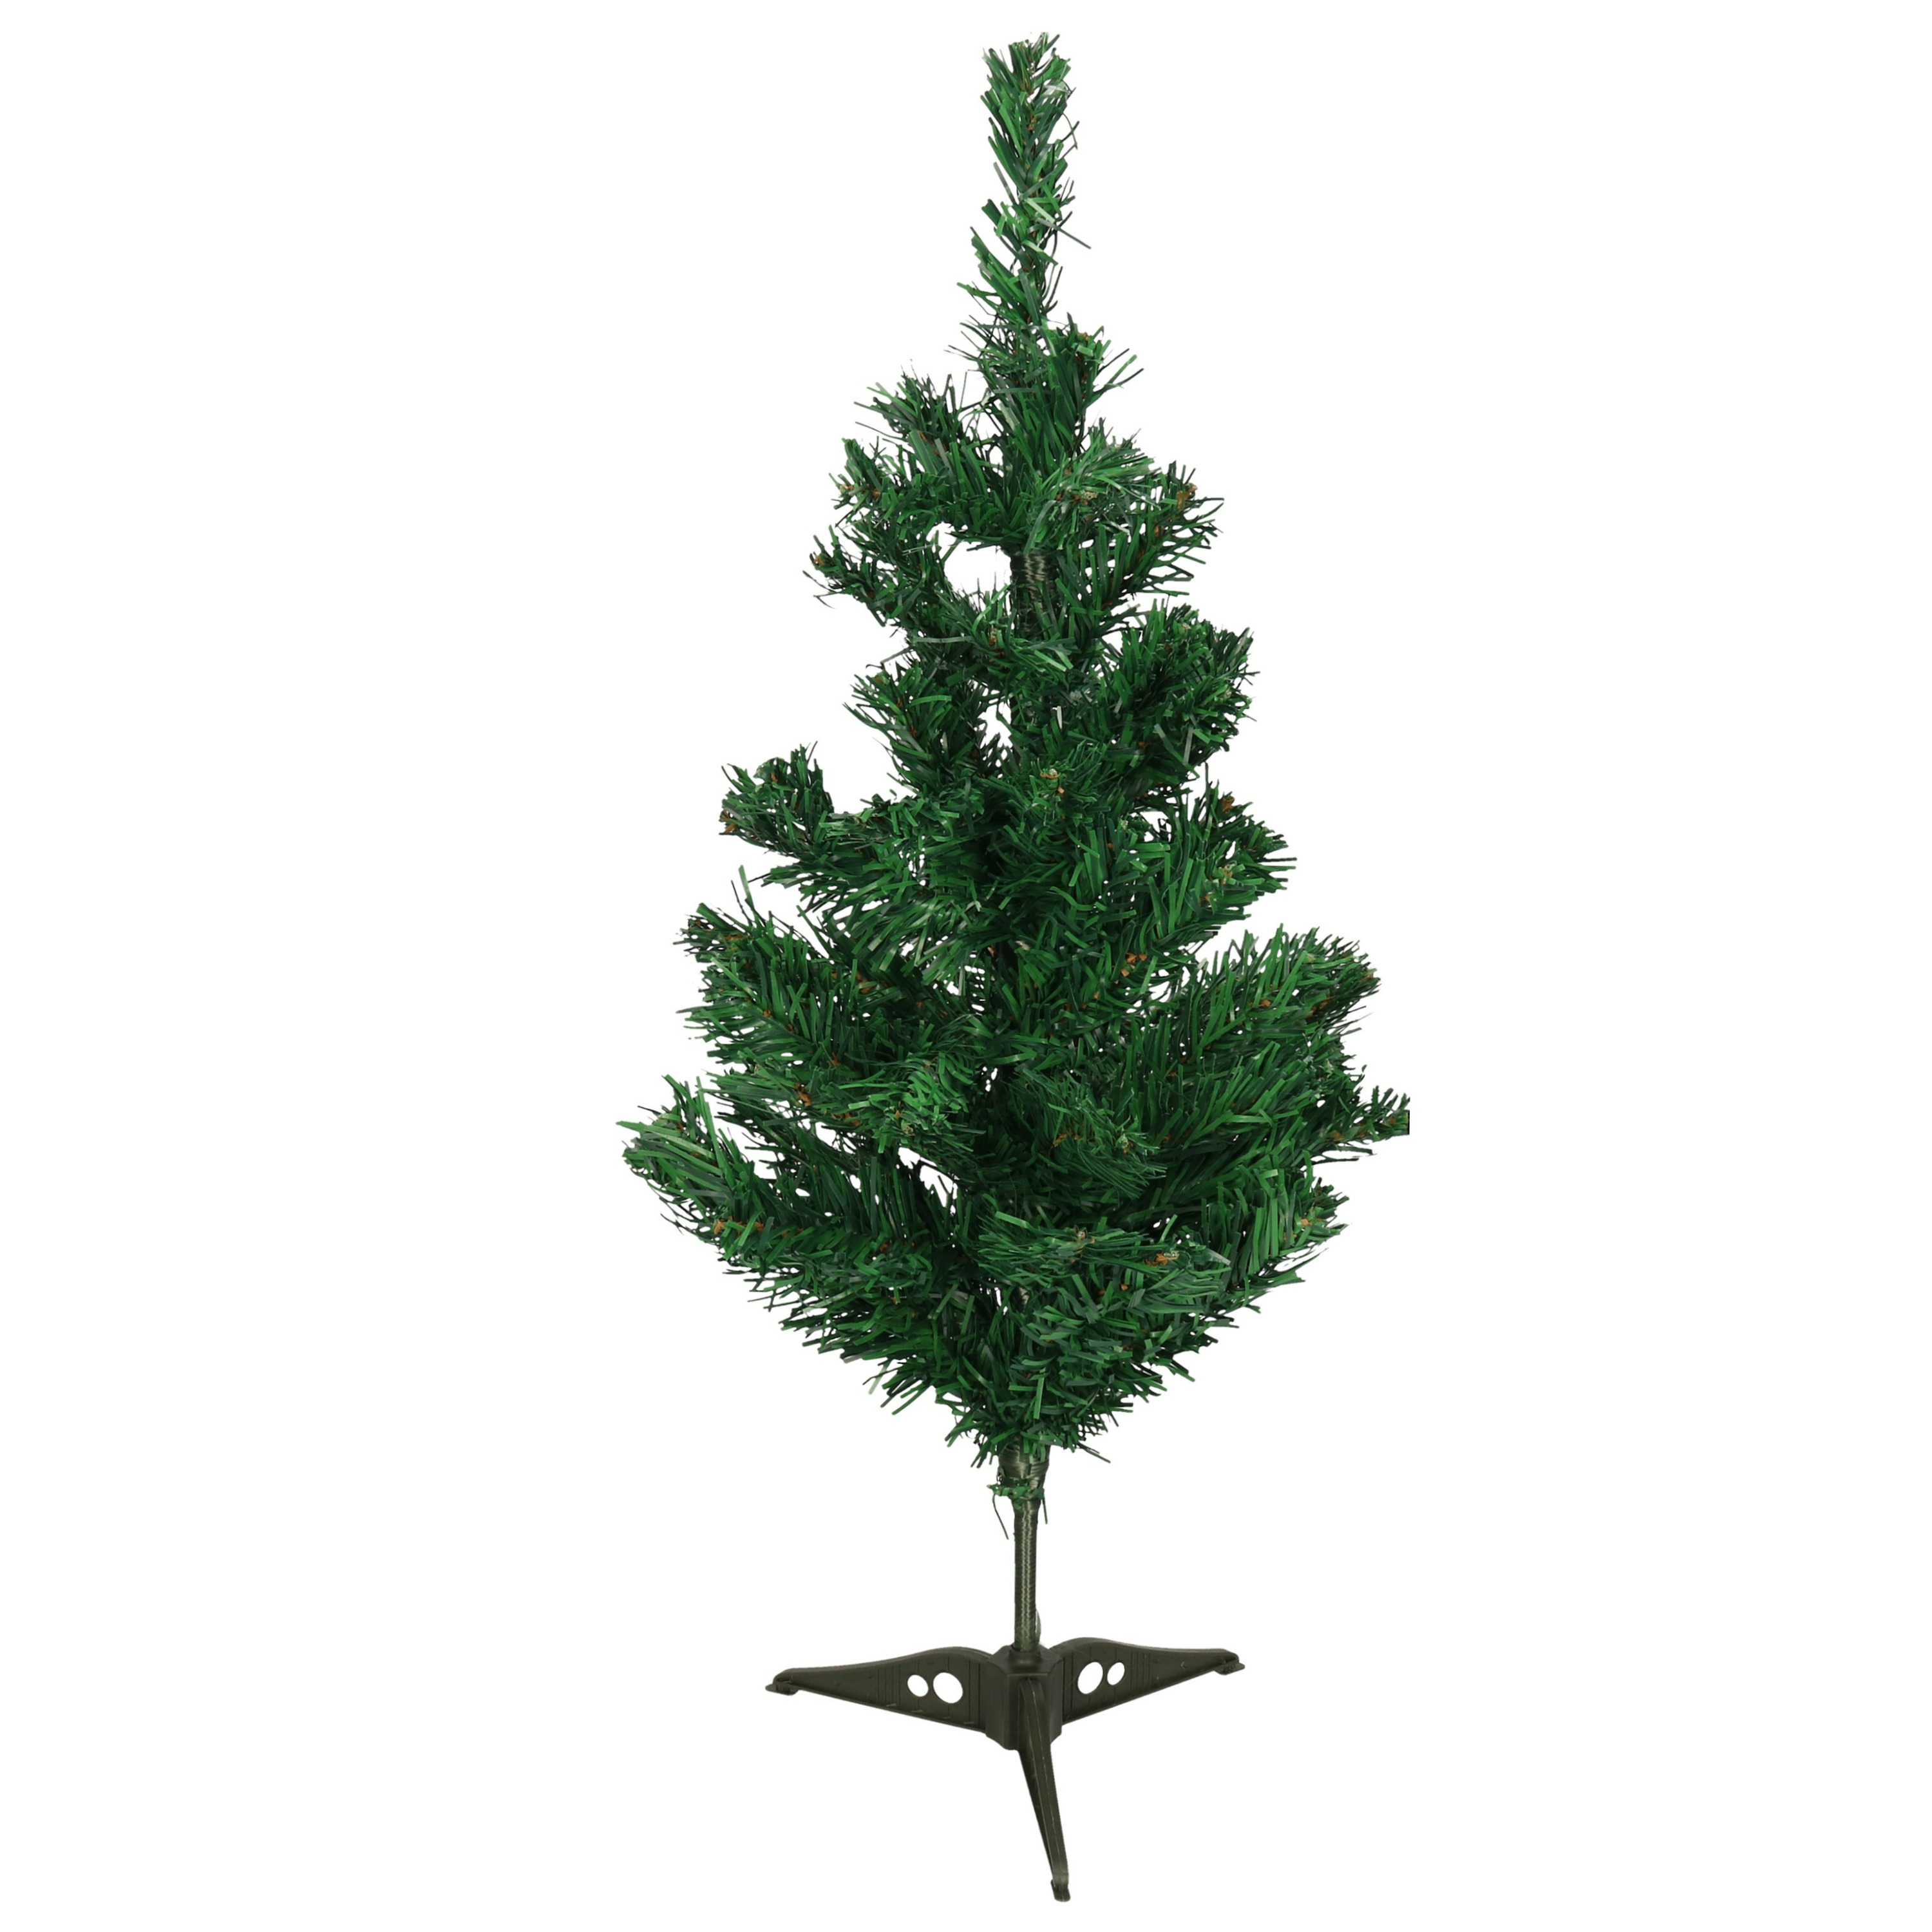 Mini kunst kerstboom 60 cm groen op standaard Dia is 30 cm onderkant